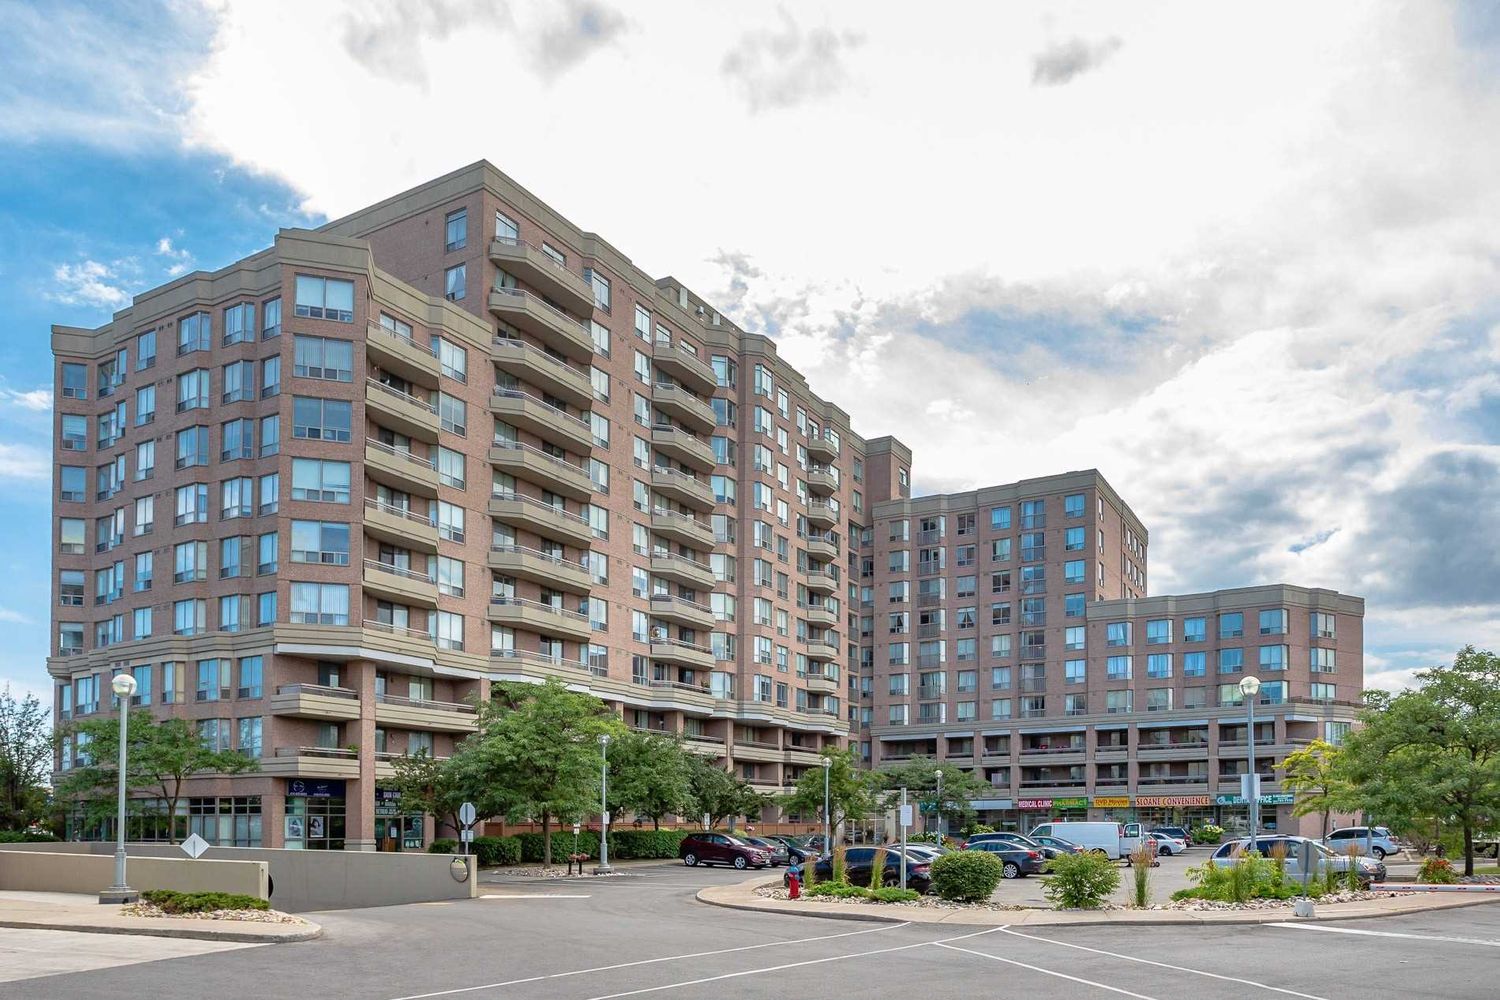 1700 Eglinton Avenue E. Oasis Condos is located in  North York, Toronto - image #1 of 4